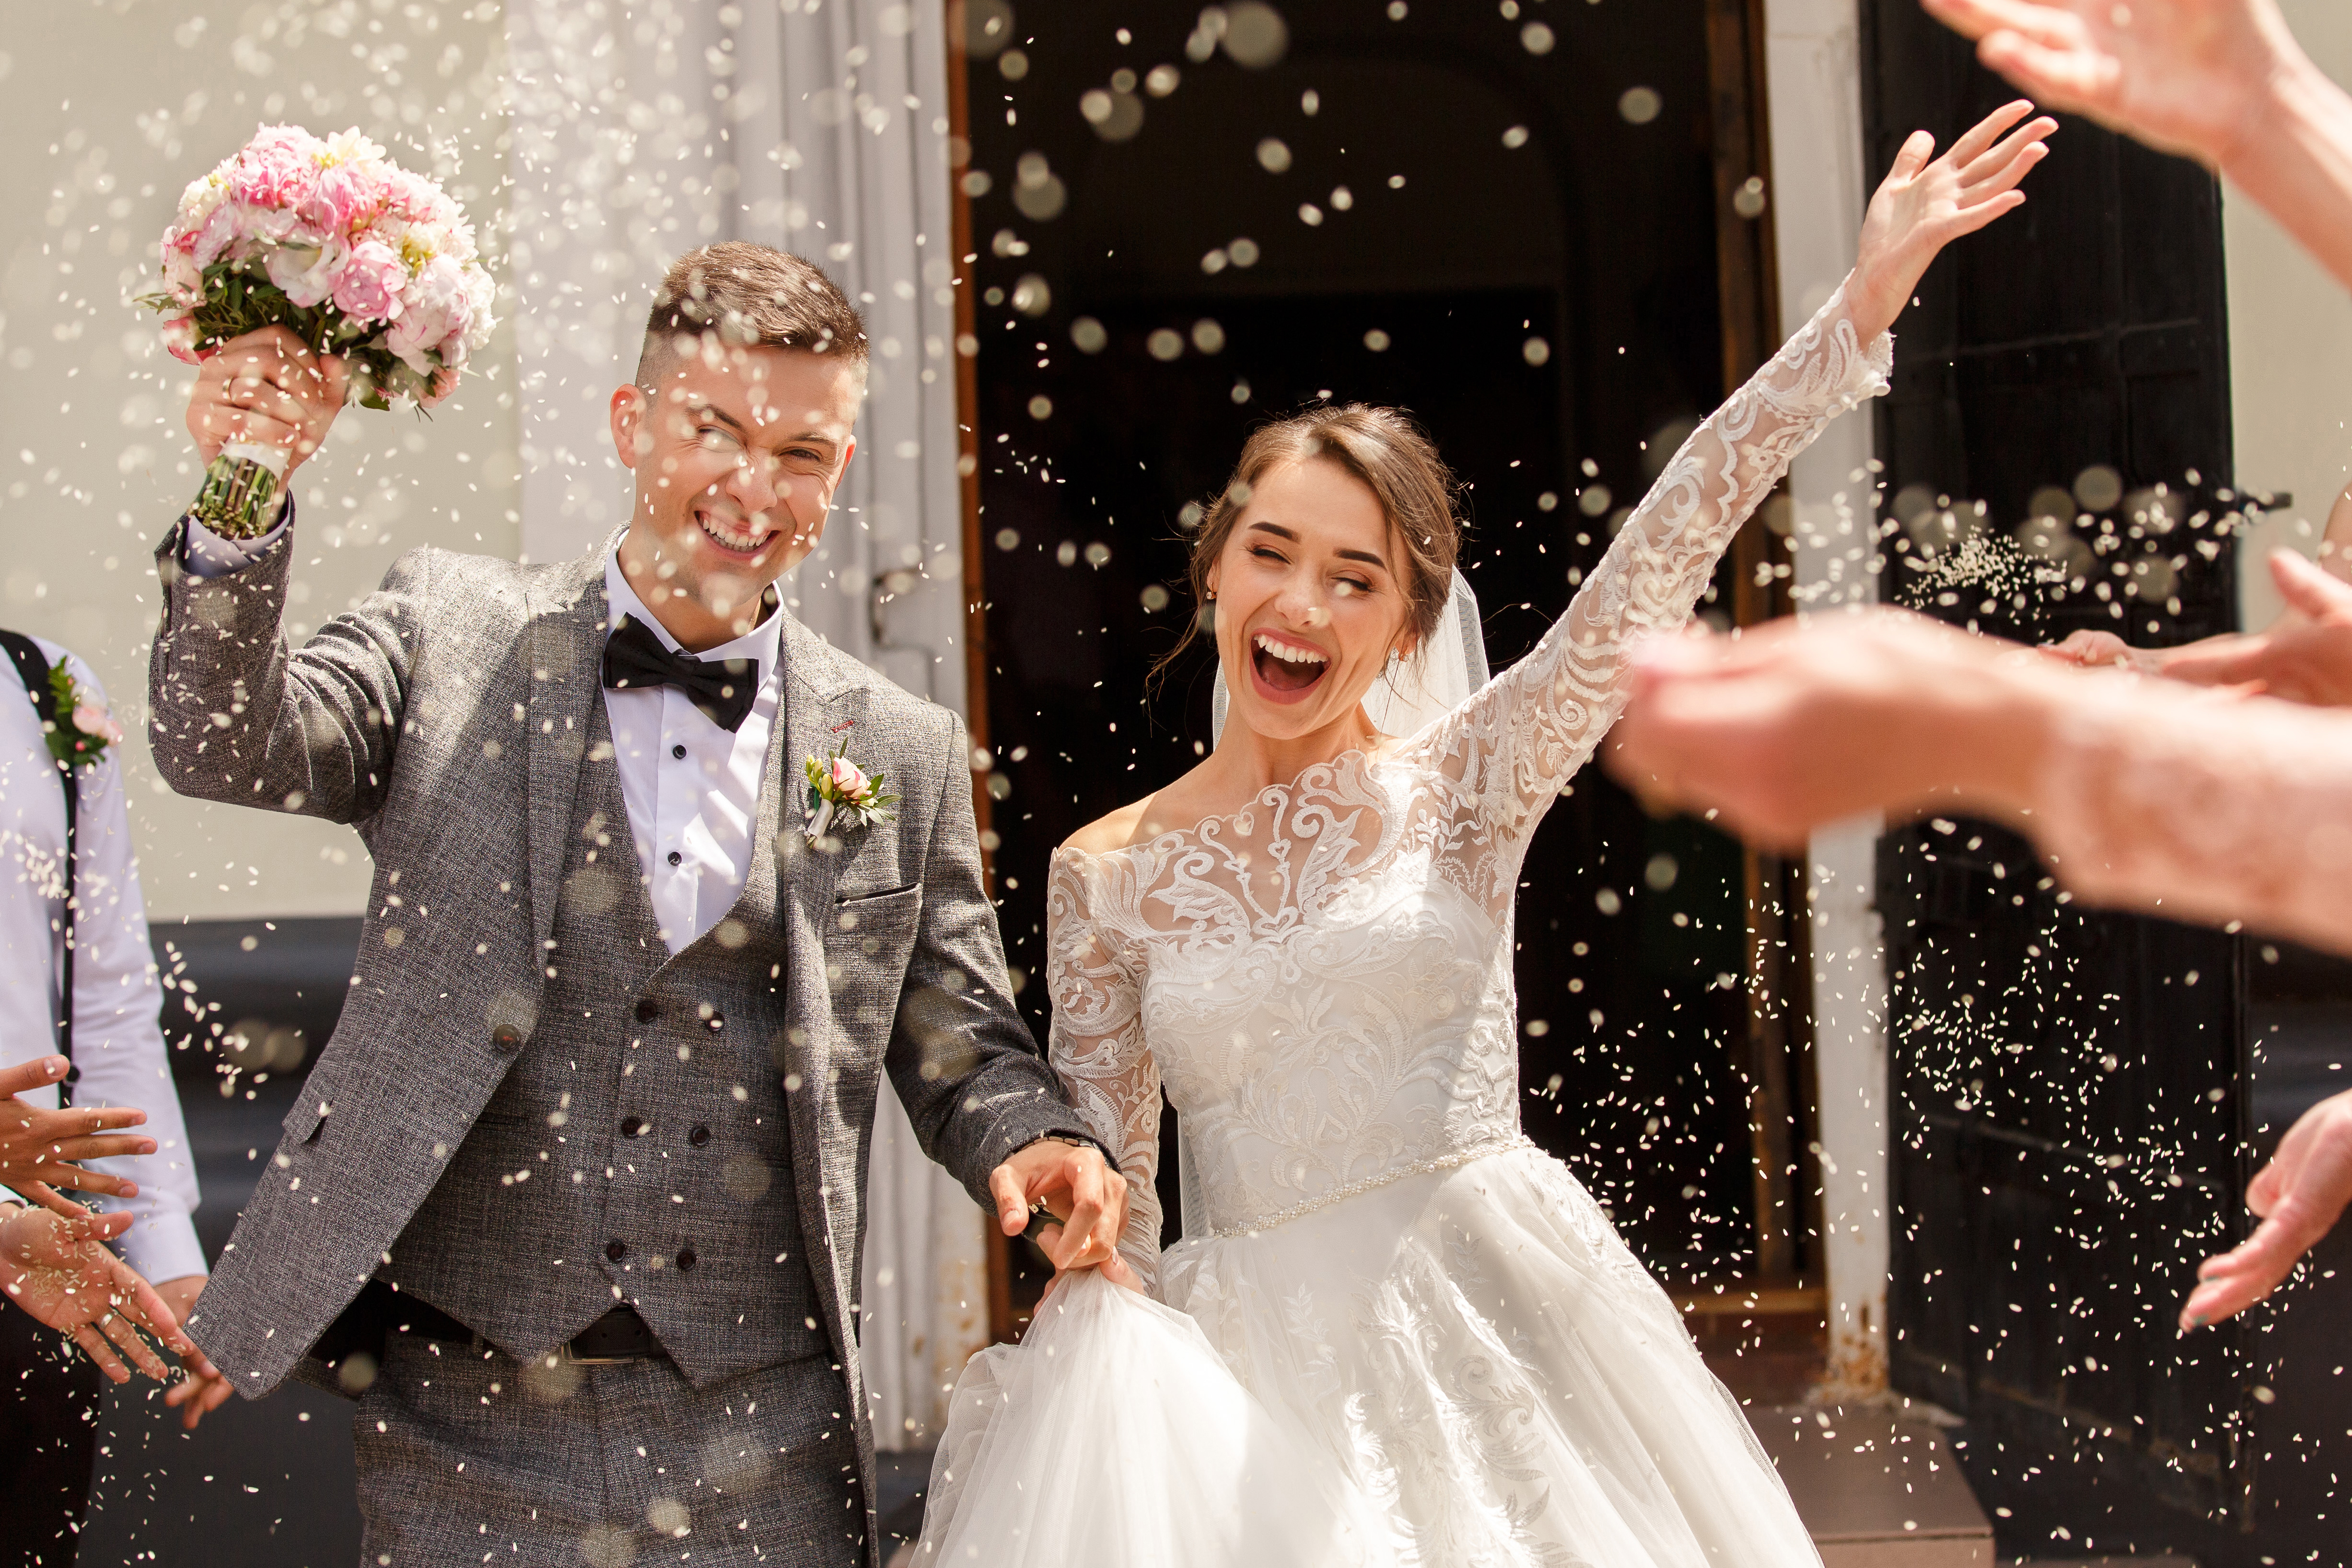 Ein glückliches Paar bei seiner Hochzeitszeremonie | Quelle: Shutterstock